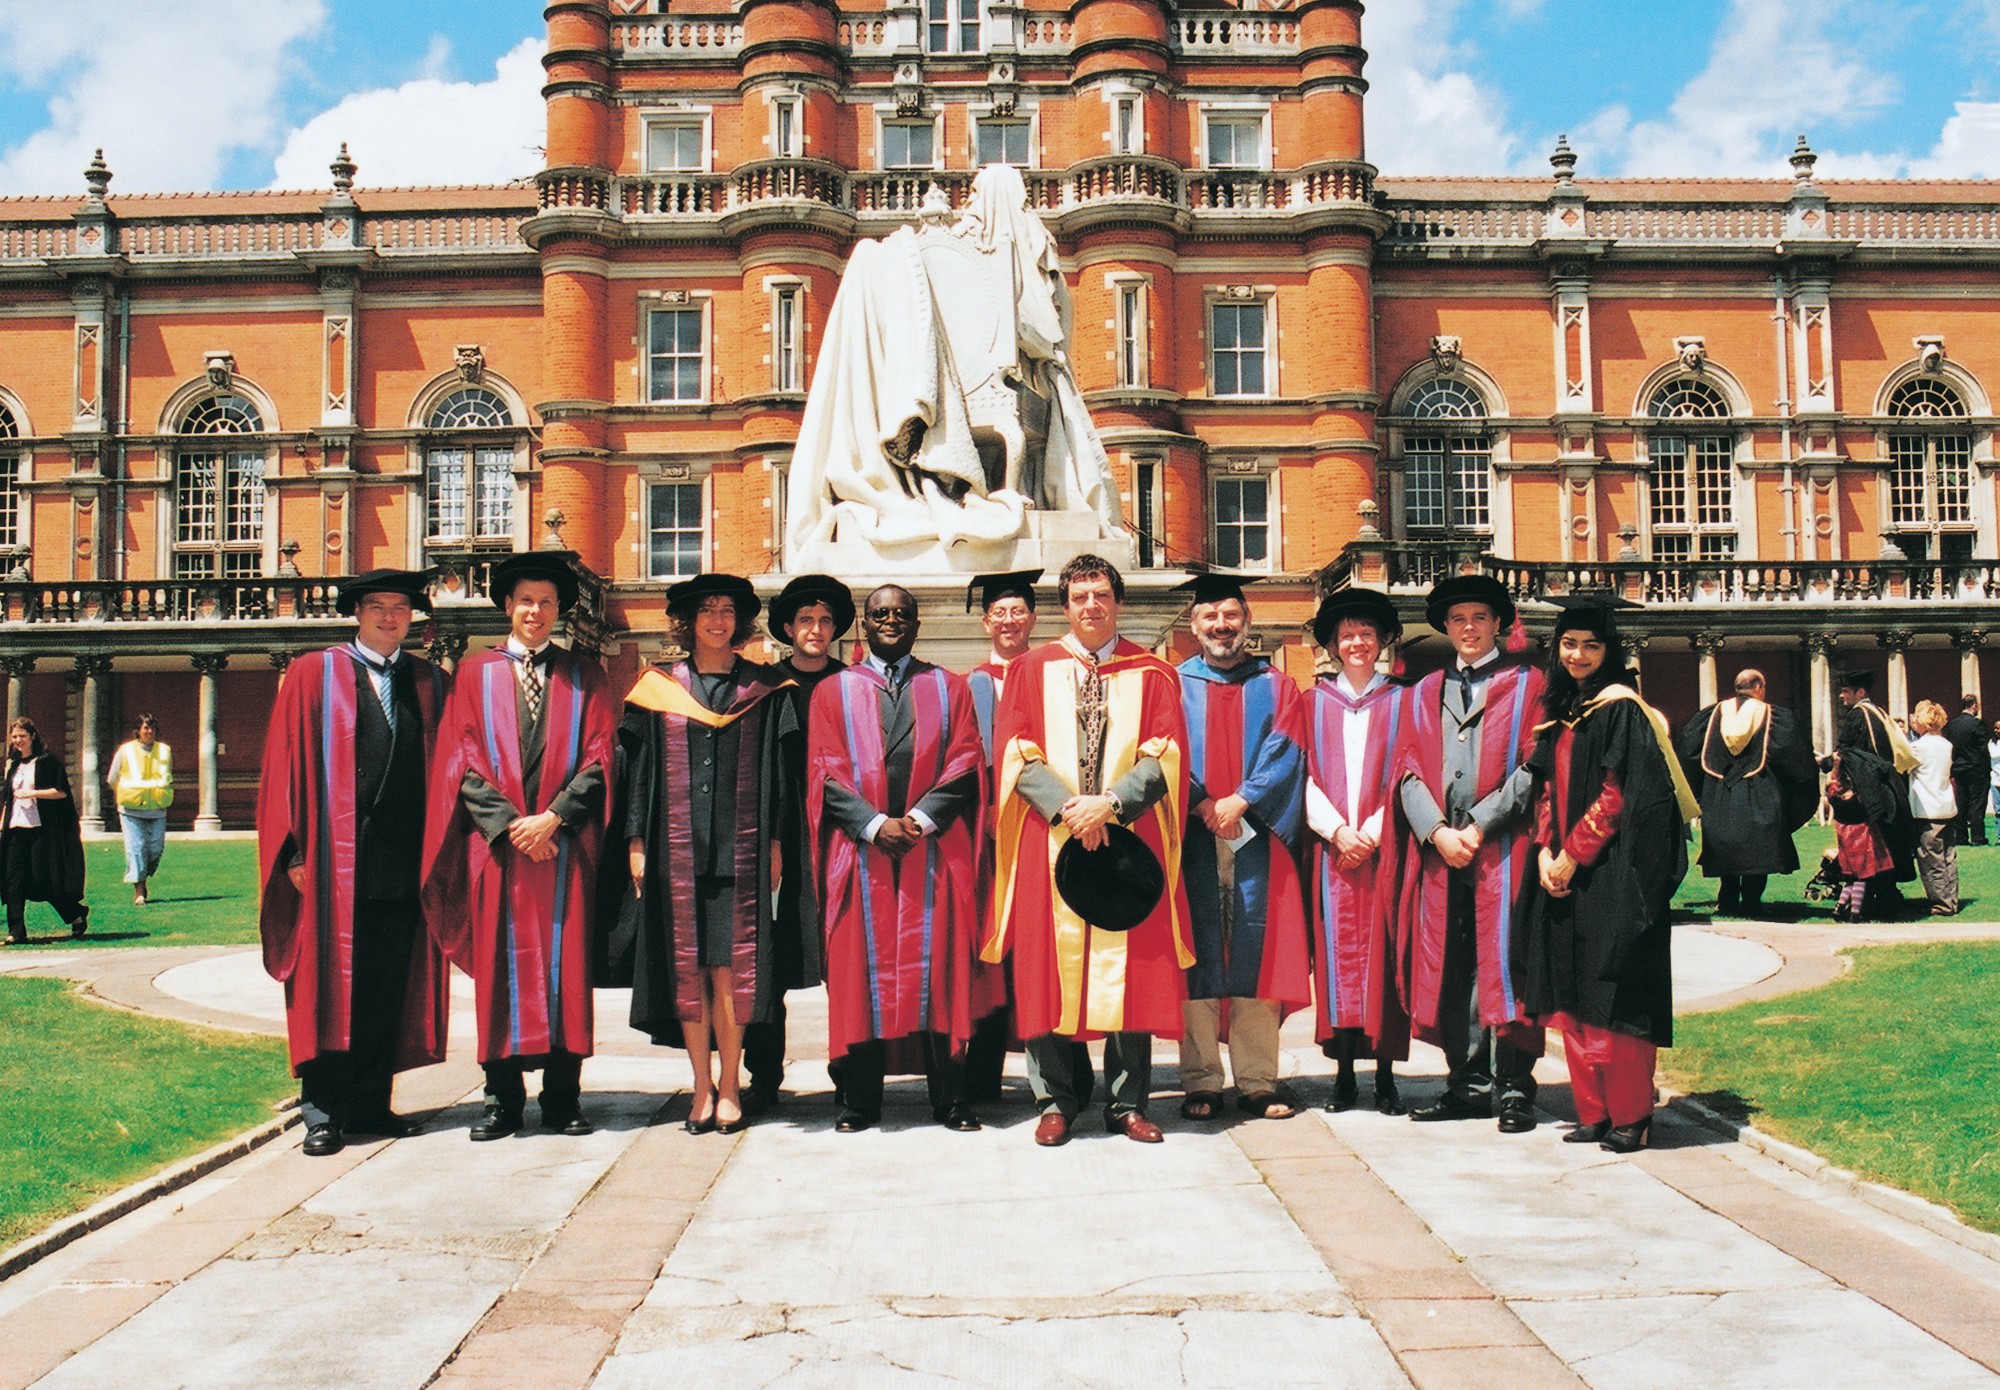 Postgraduates in graduation robes in the North Quad